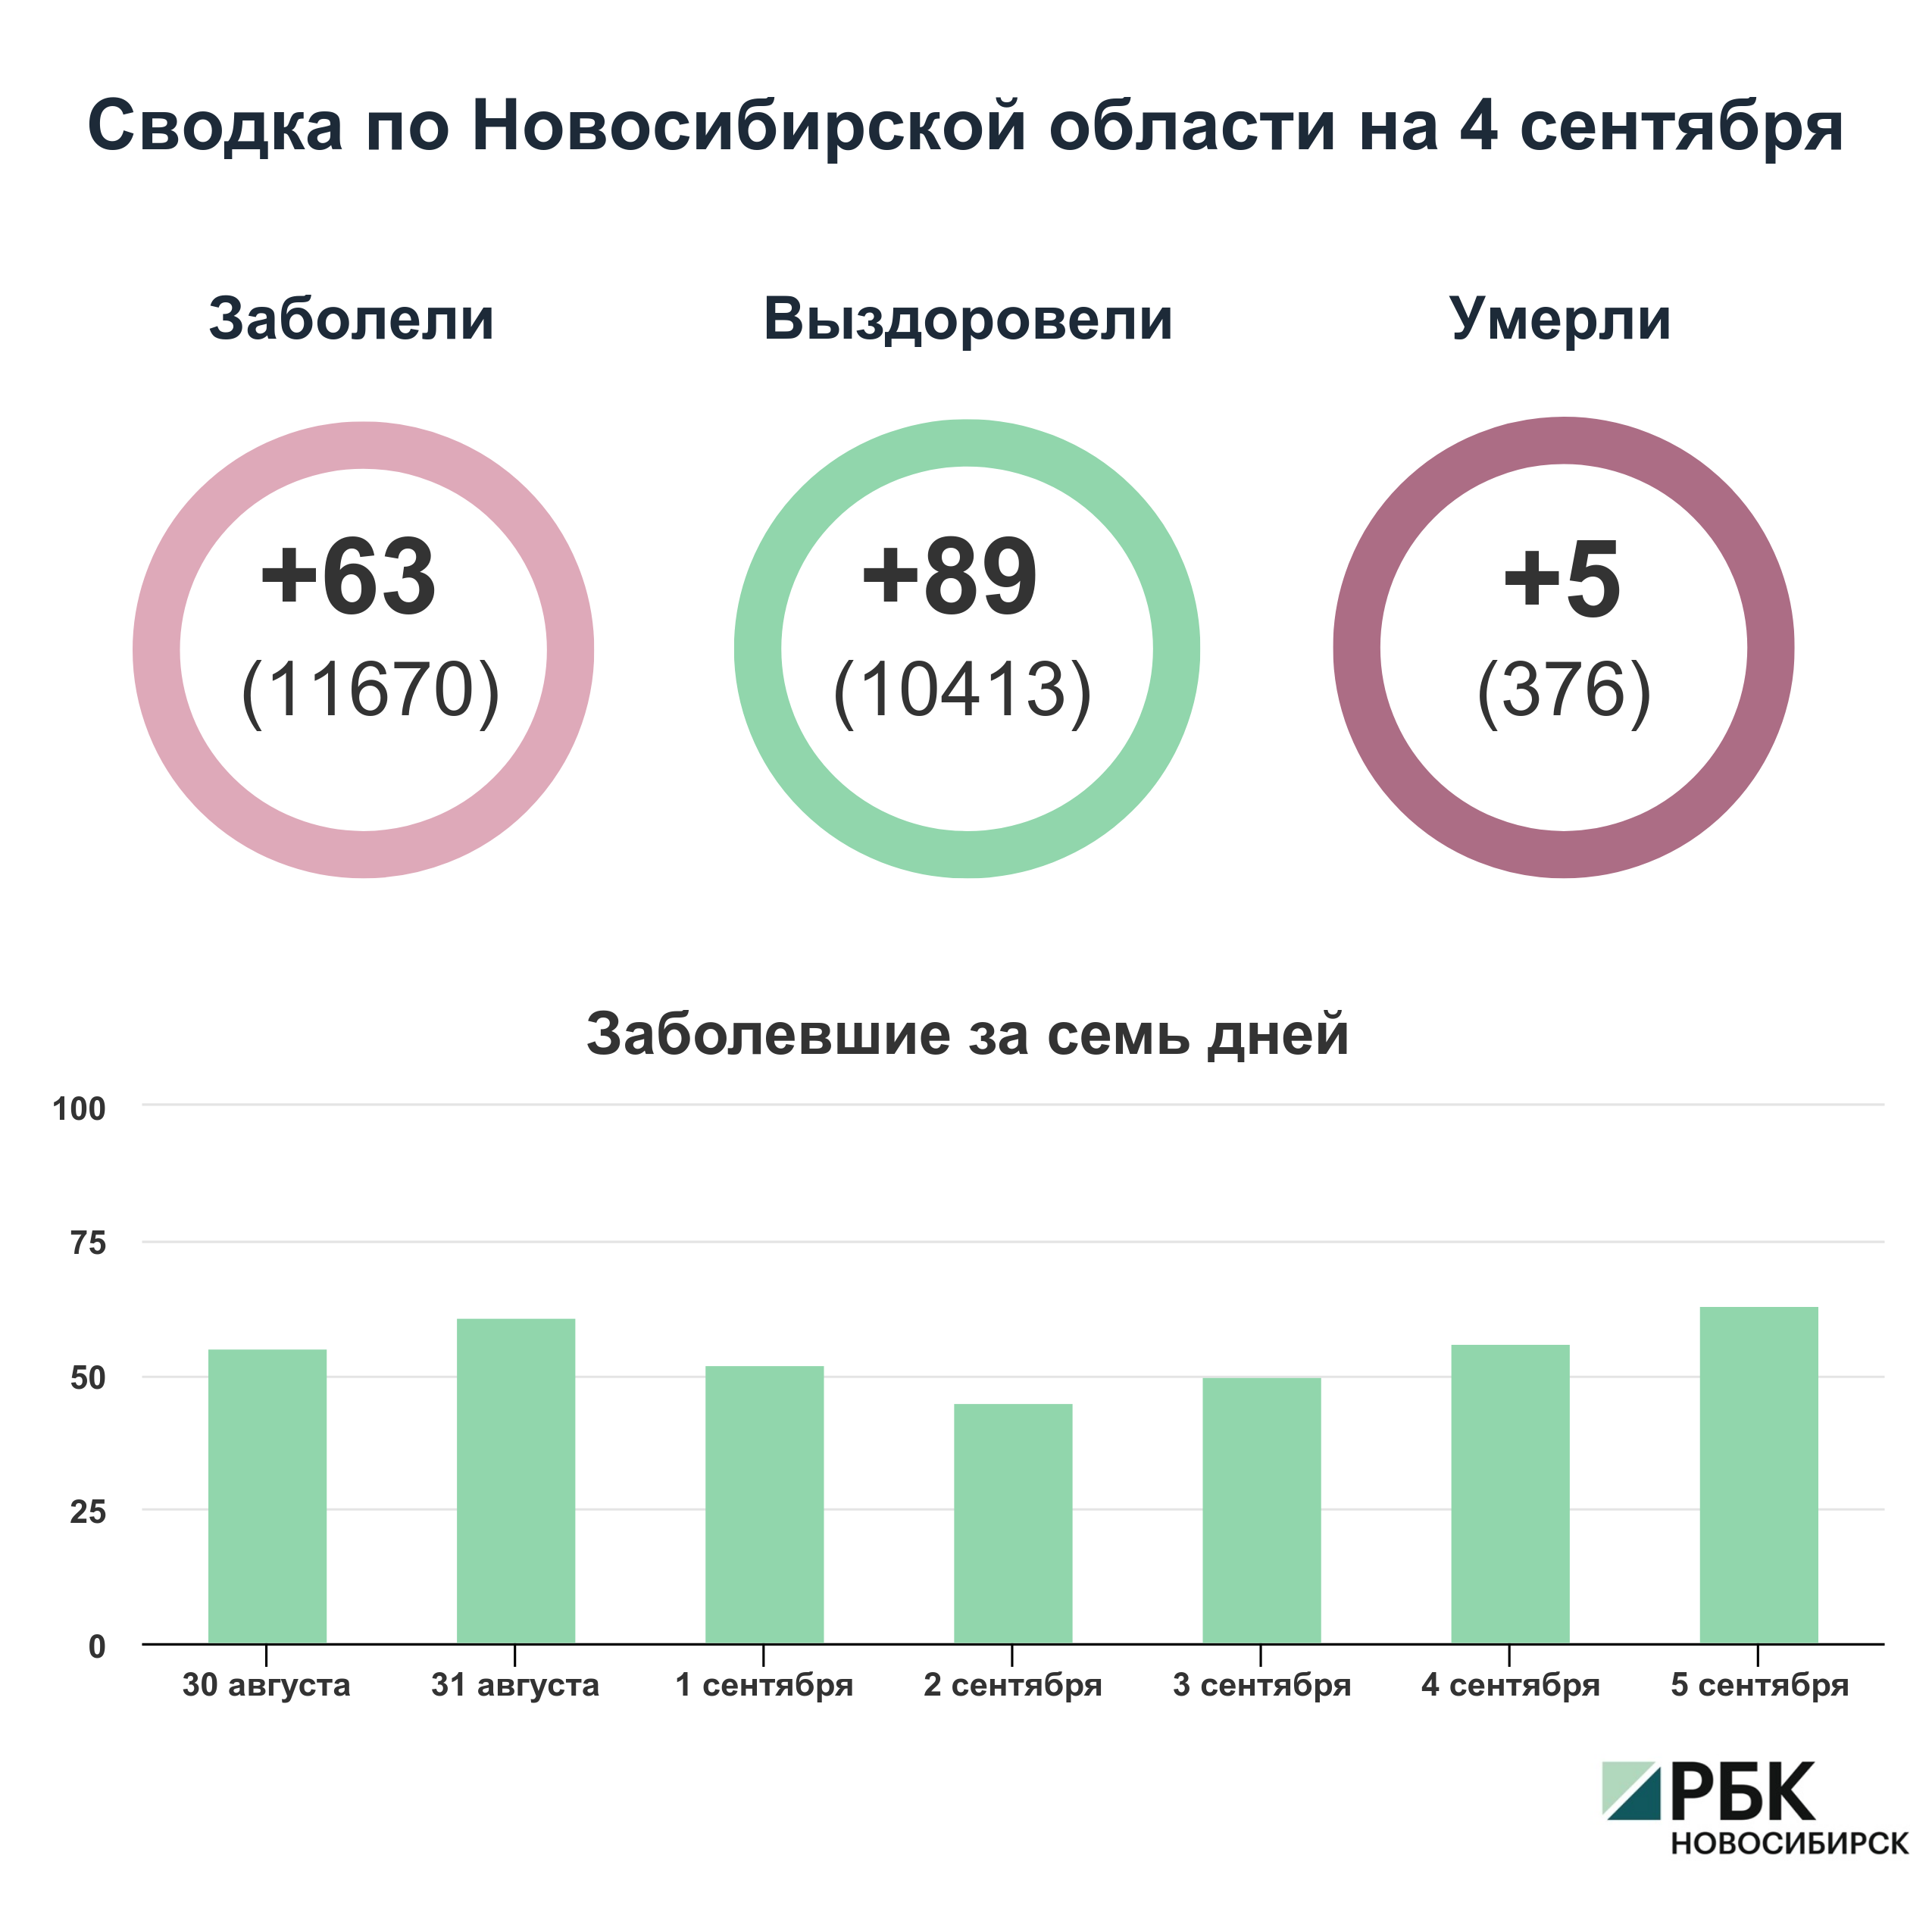 Коронавирус в Новосибирске: сводка на 5 сентября